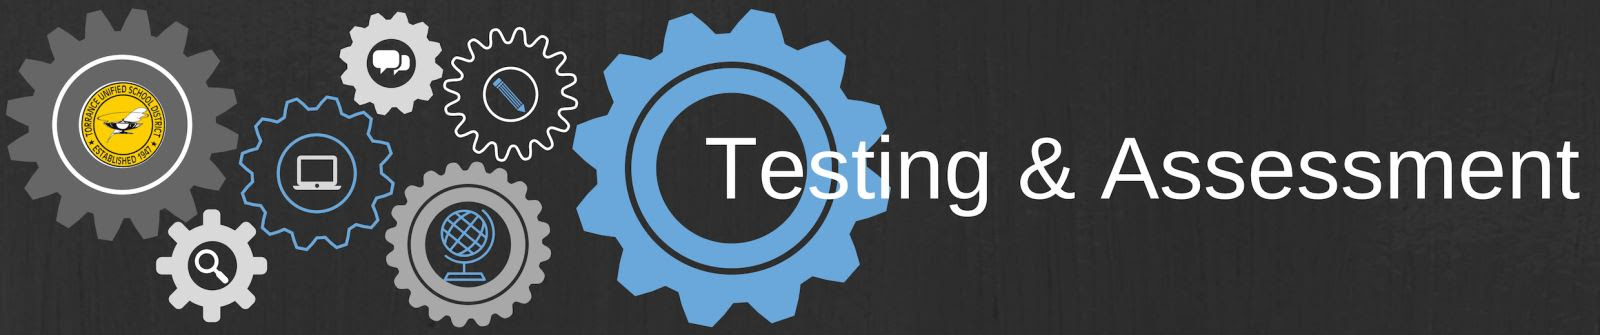 Testing & Assessment